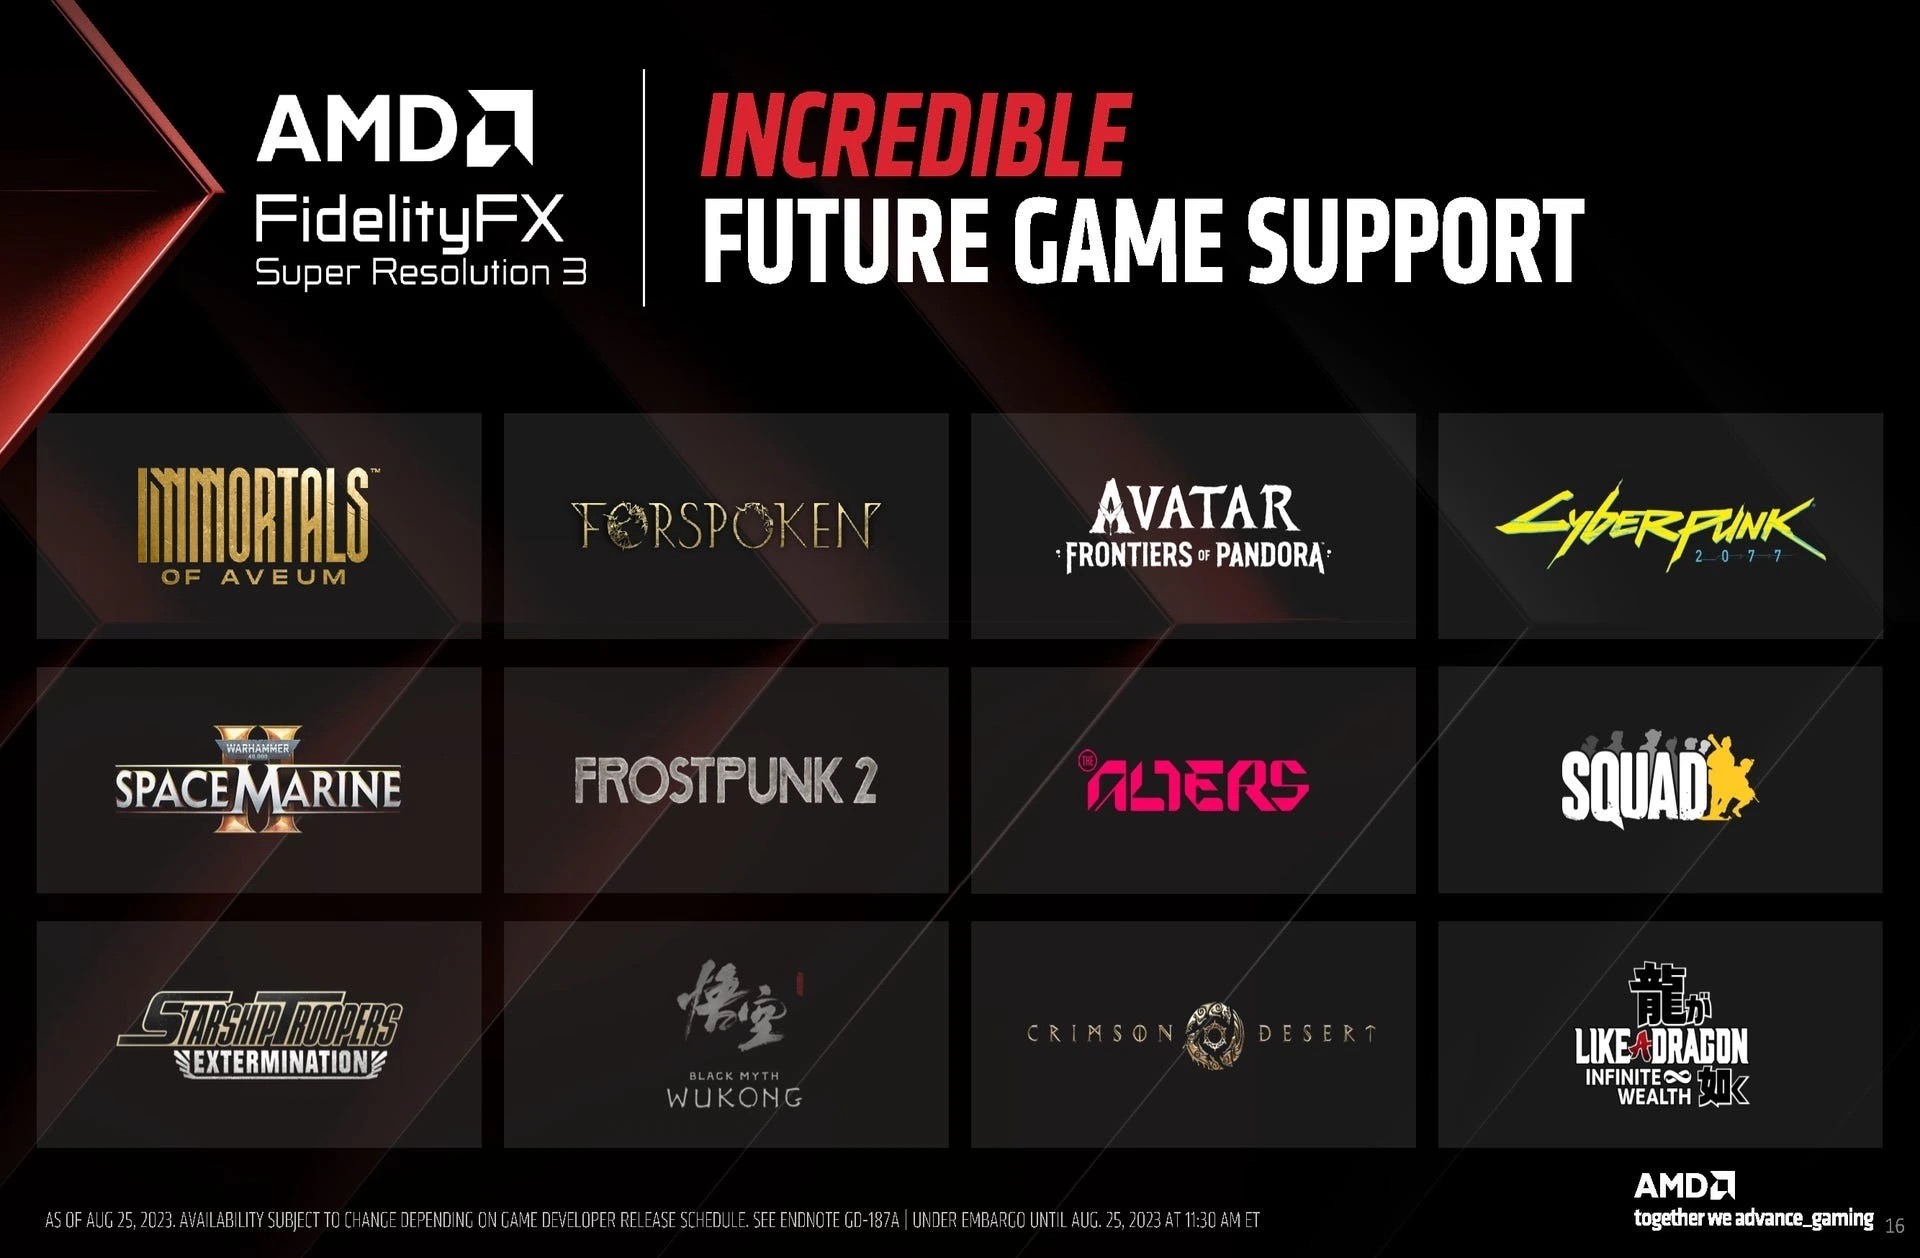 Подтверждено, что AMD FSR 3.0 будет работать в играх на Xbox: с сайта NEWXBOXONE.RU